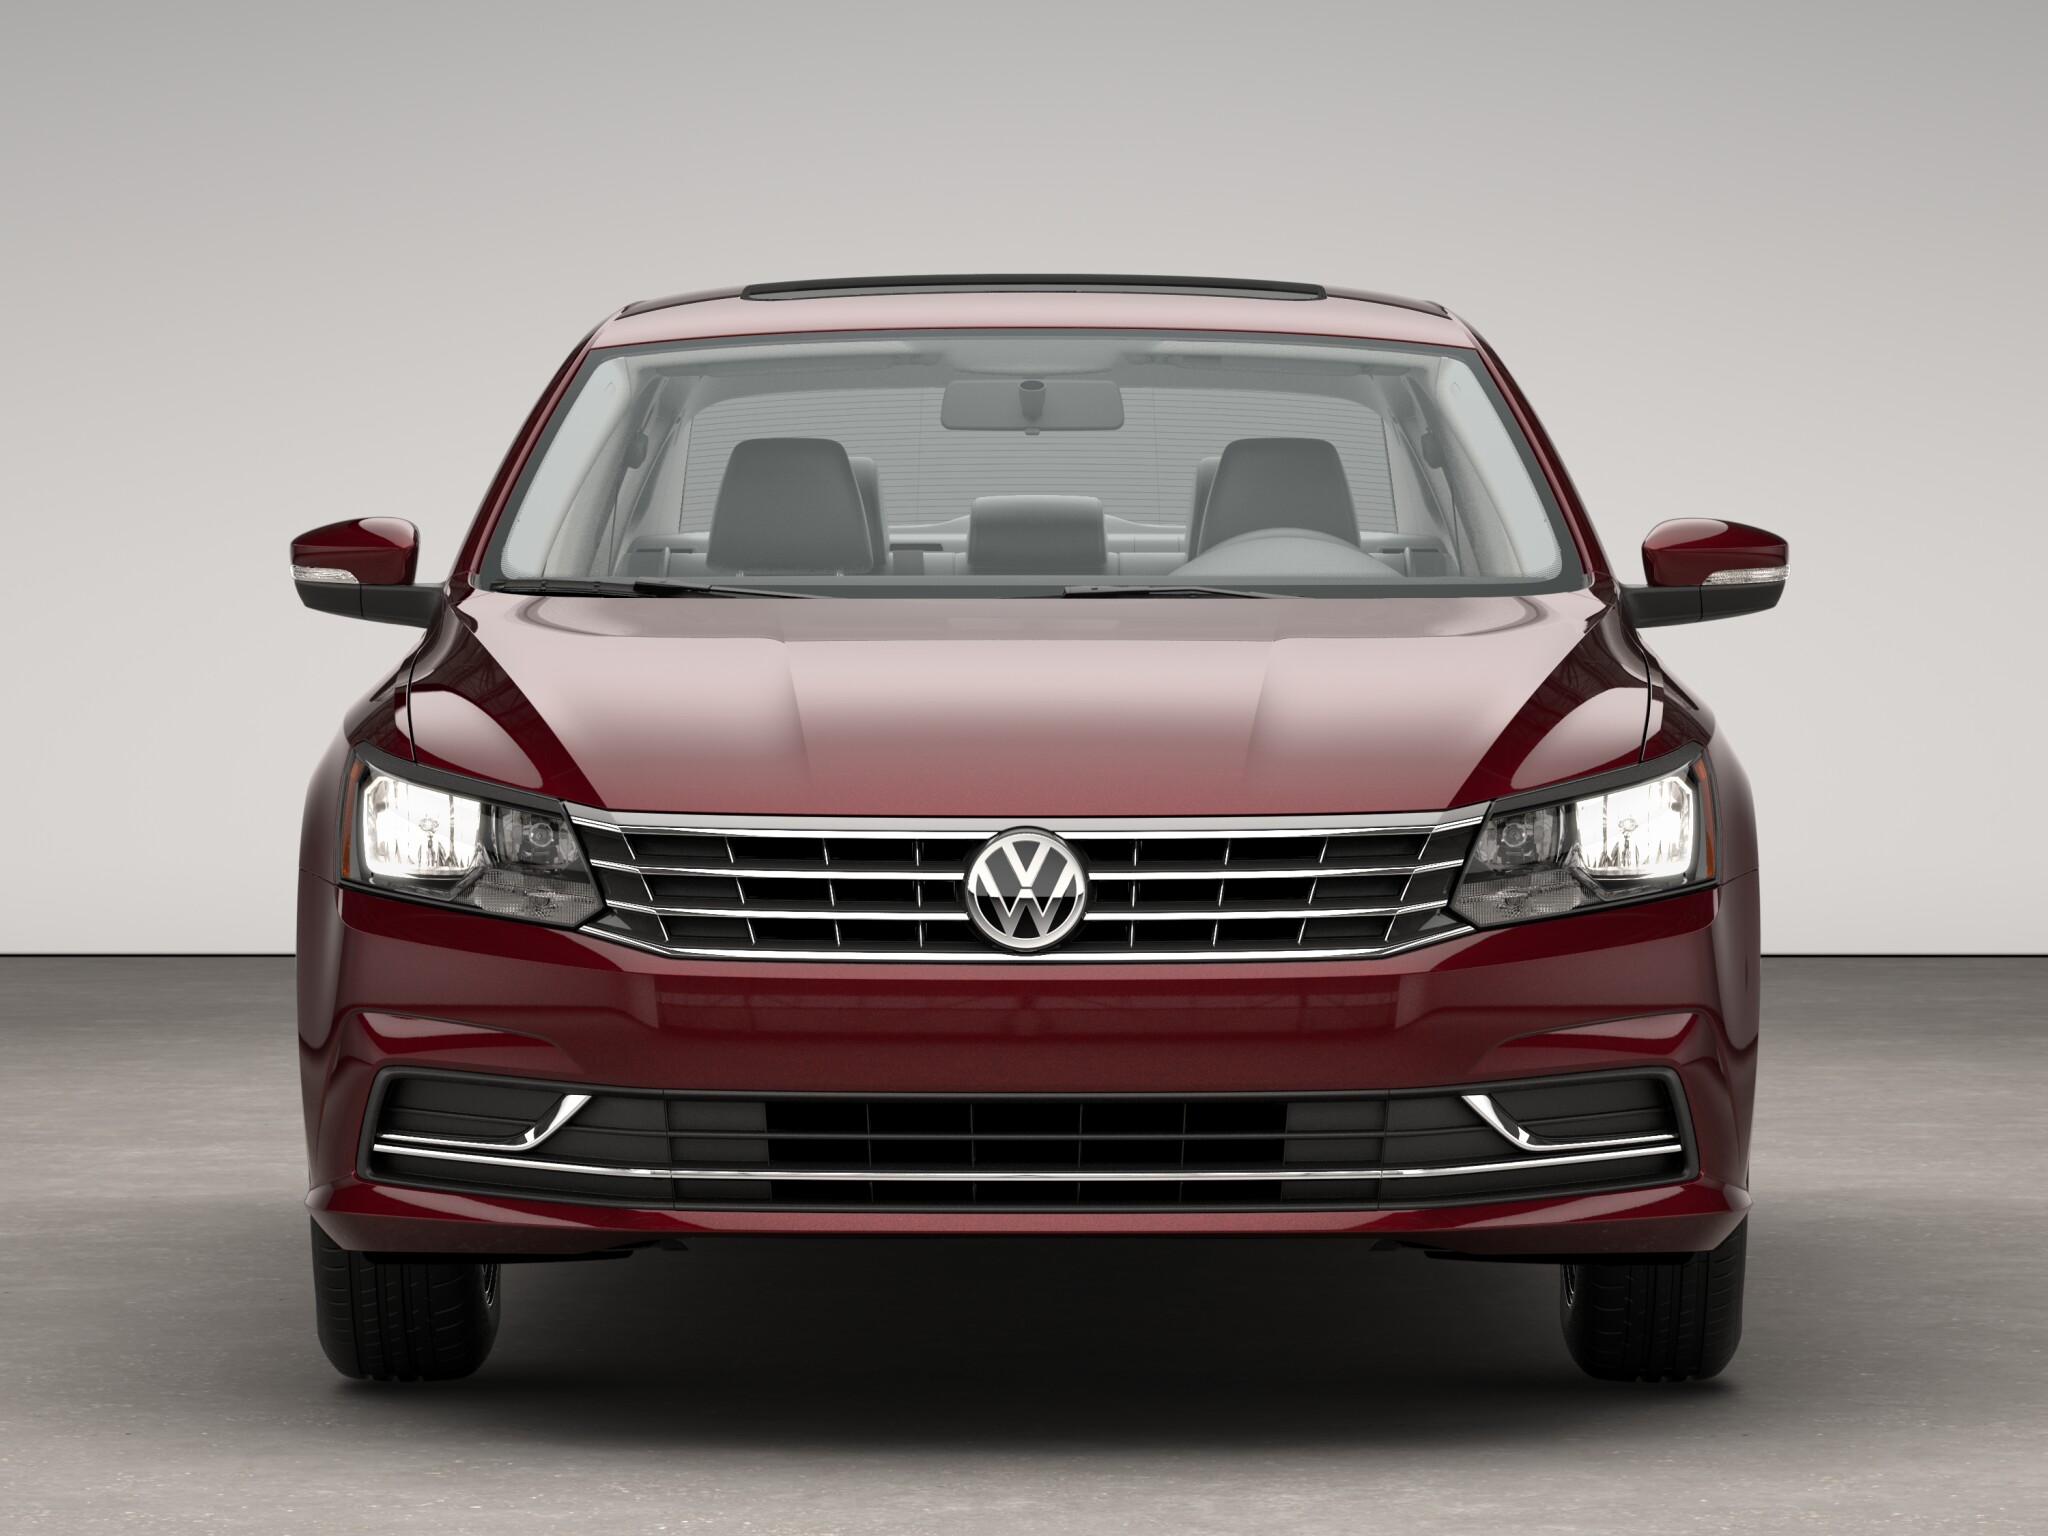 Volkswagen Passat 1.8T SE front view